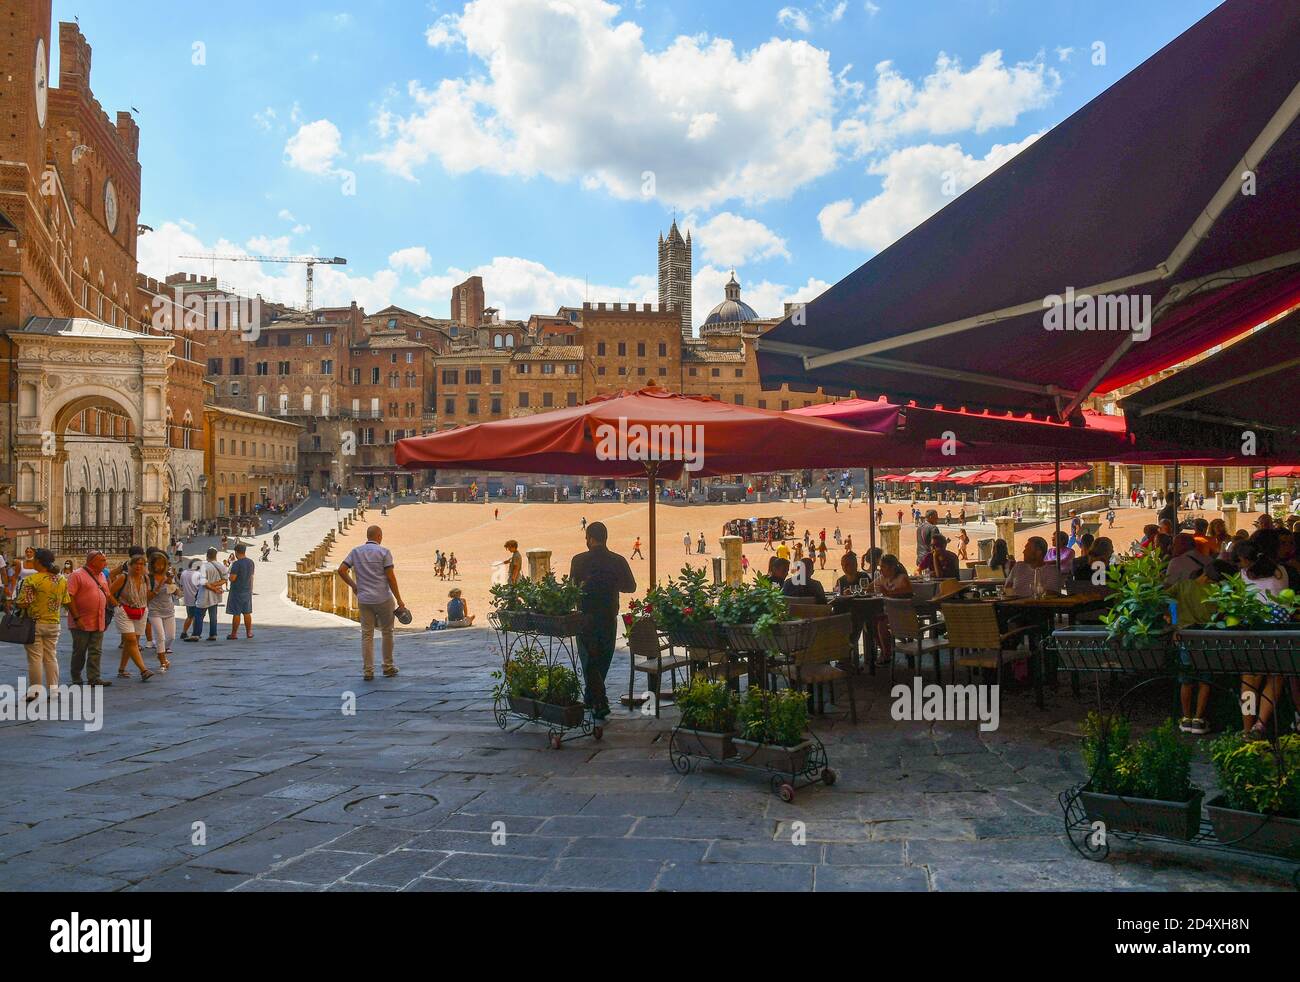 Café en plein air bondé de touristes sur la Piazza del Campo, place principale de la vieille ville de Sienne, patrimoine de l'UNESCO W., en été, Toscane, Italie Banque D'Images